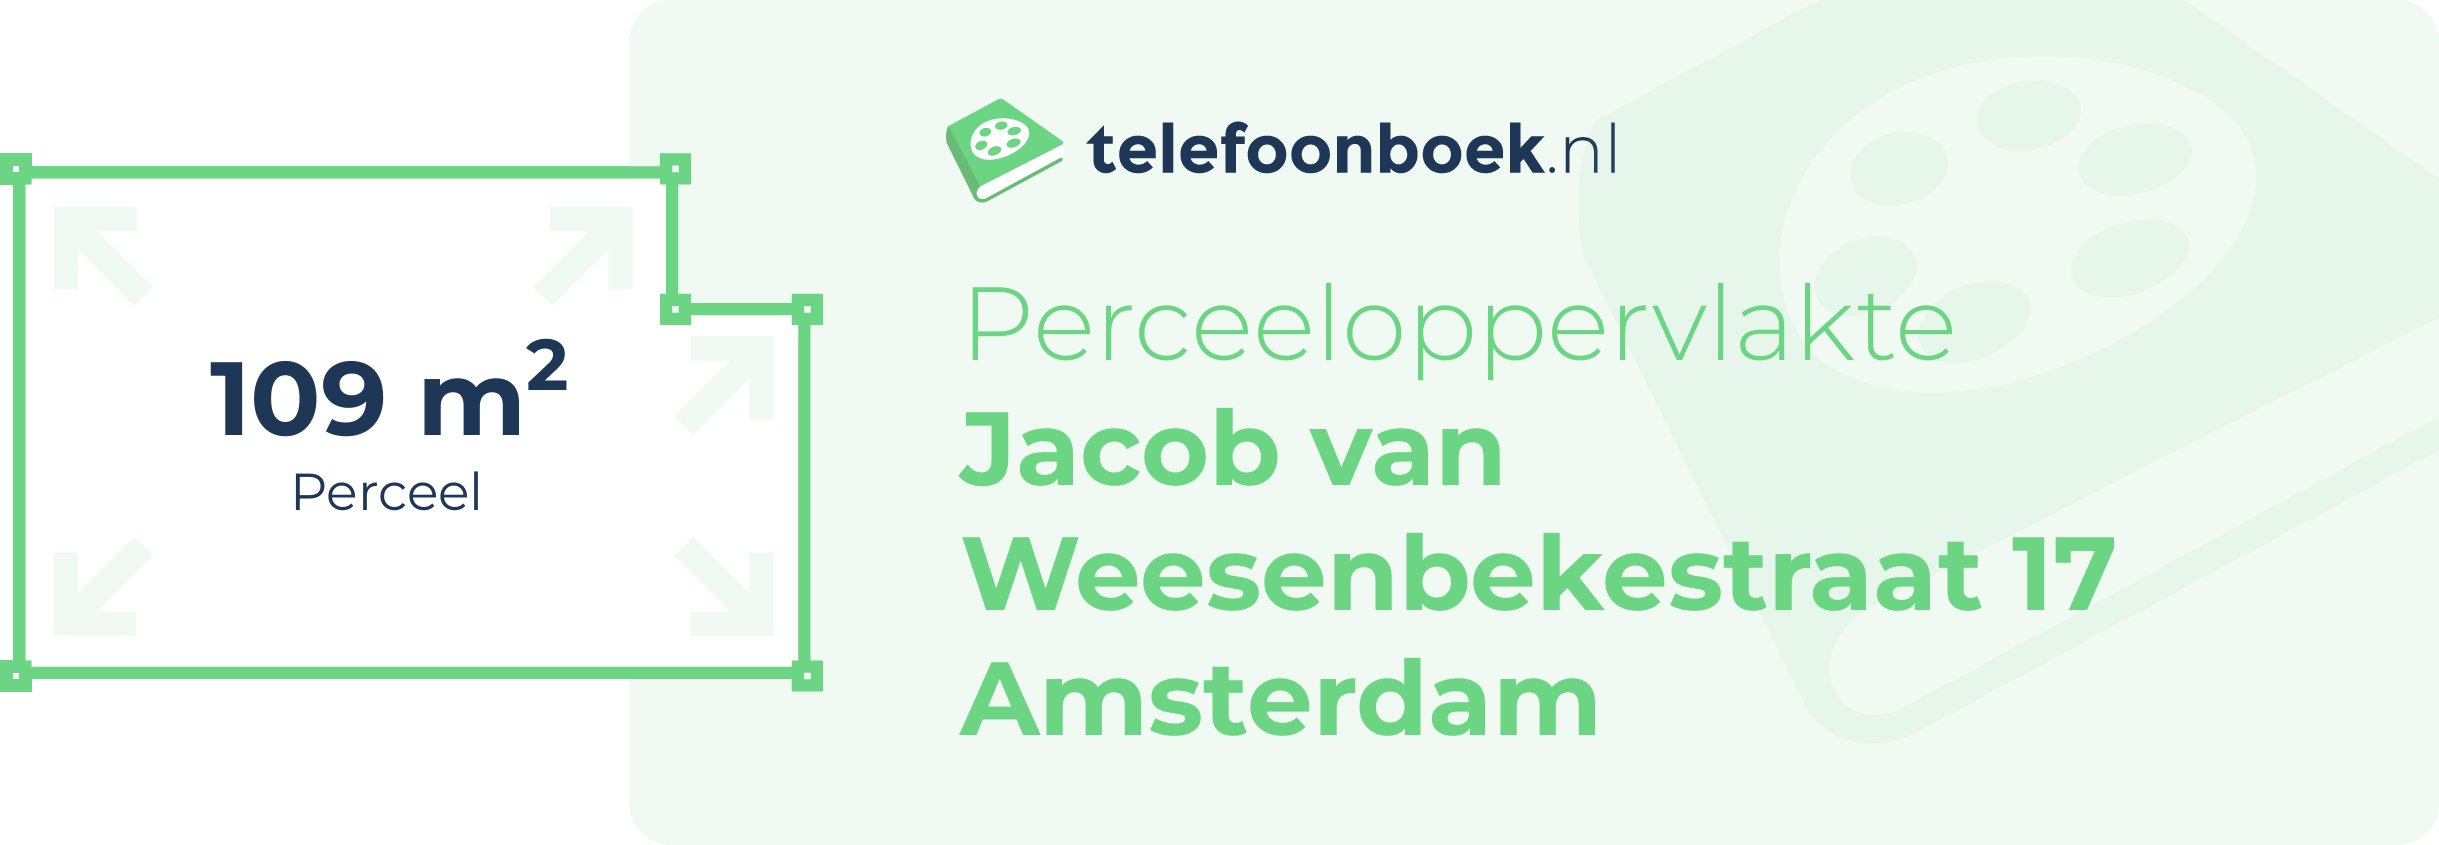 Perceeloppervlakte Jacob Van Weesenbekestraat 17 Amsterdam